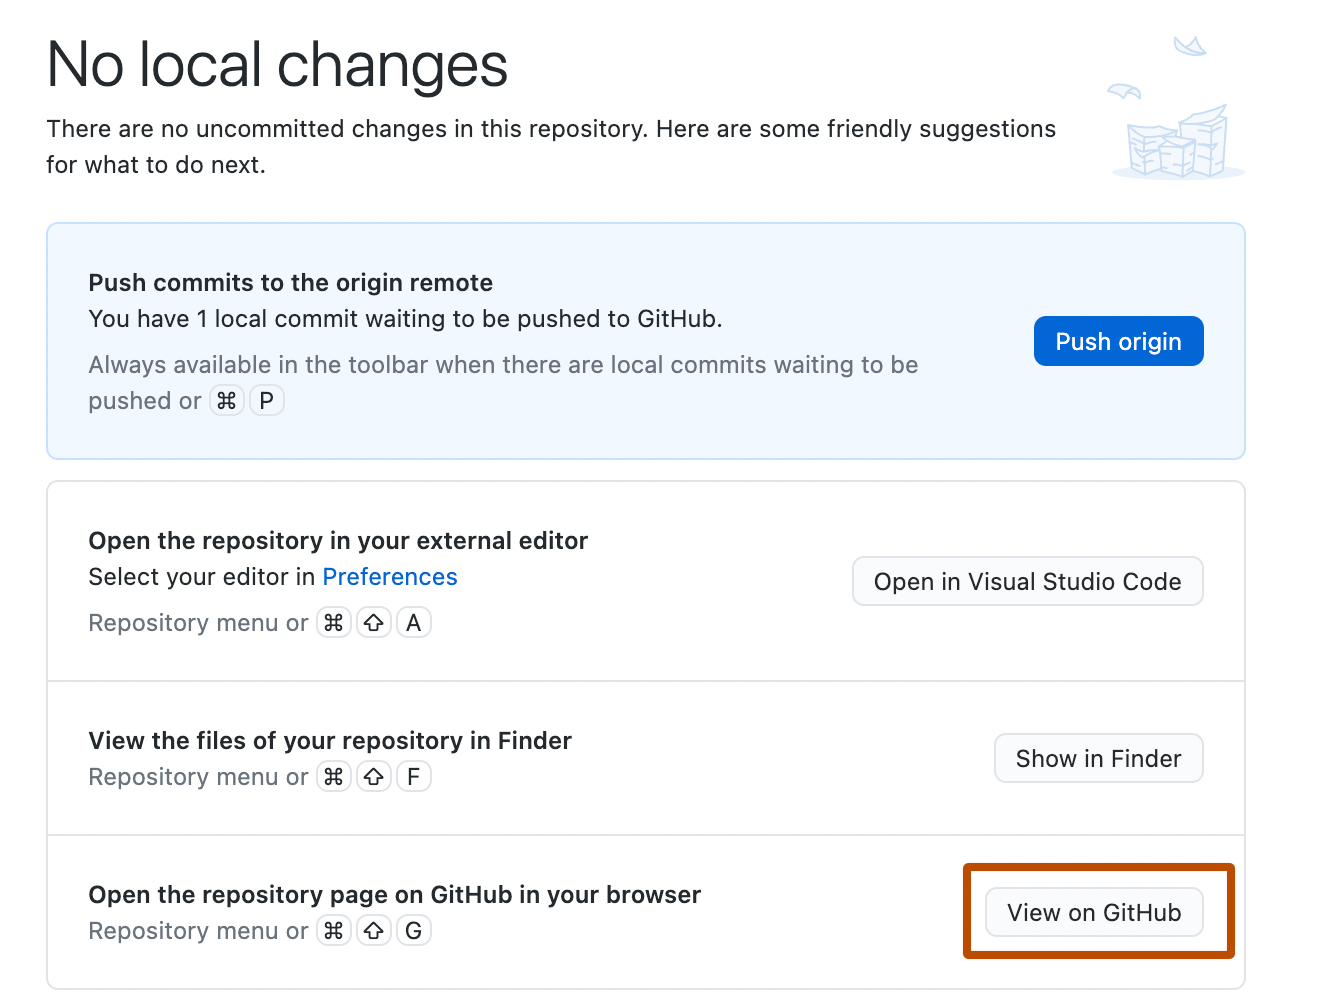 Снимок экрана: экран "Нет локальных изменений". В списке предложений кнопка с меткой "Просмотр на GitHub" выделена оранжевым контуром.